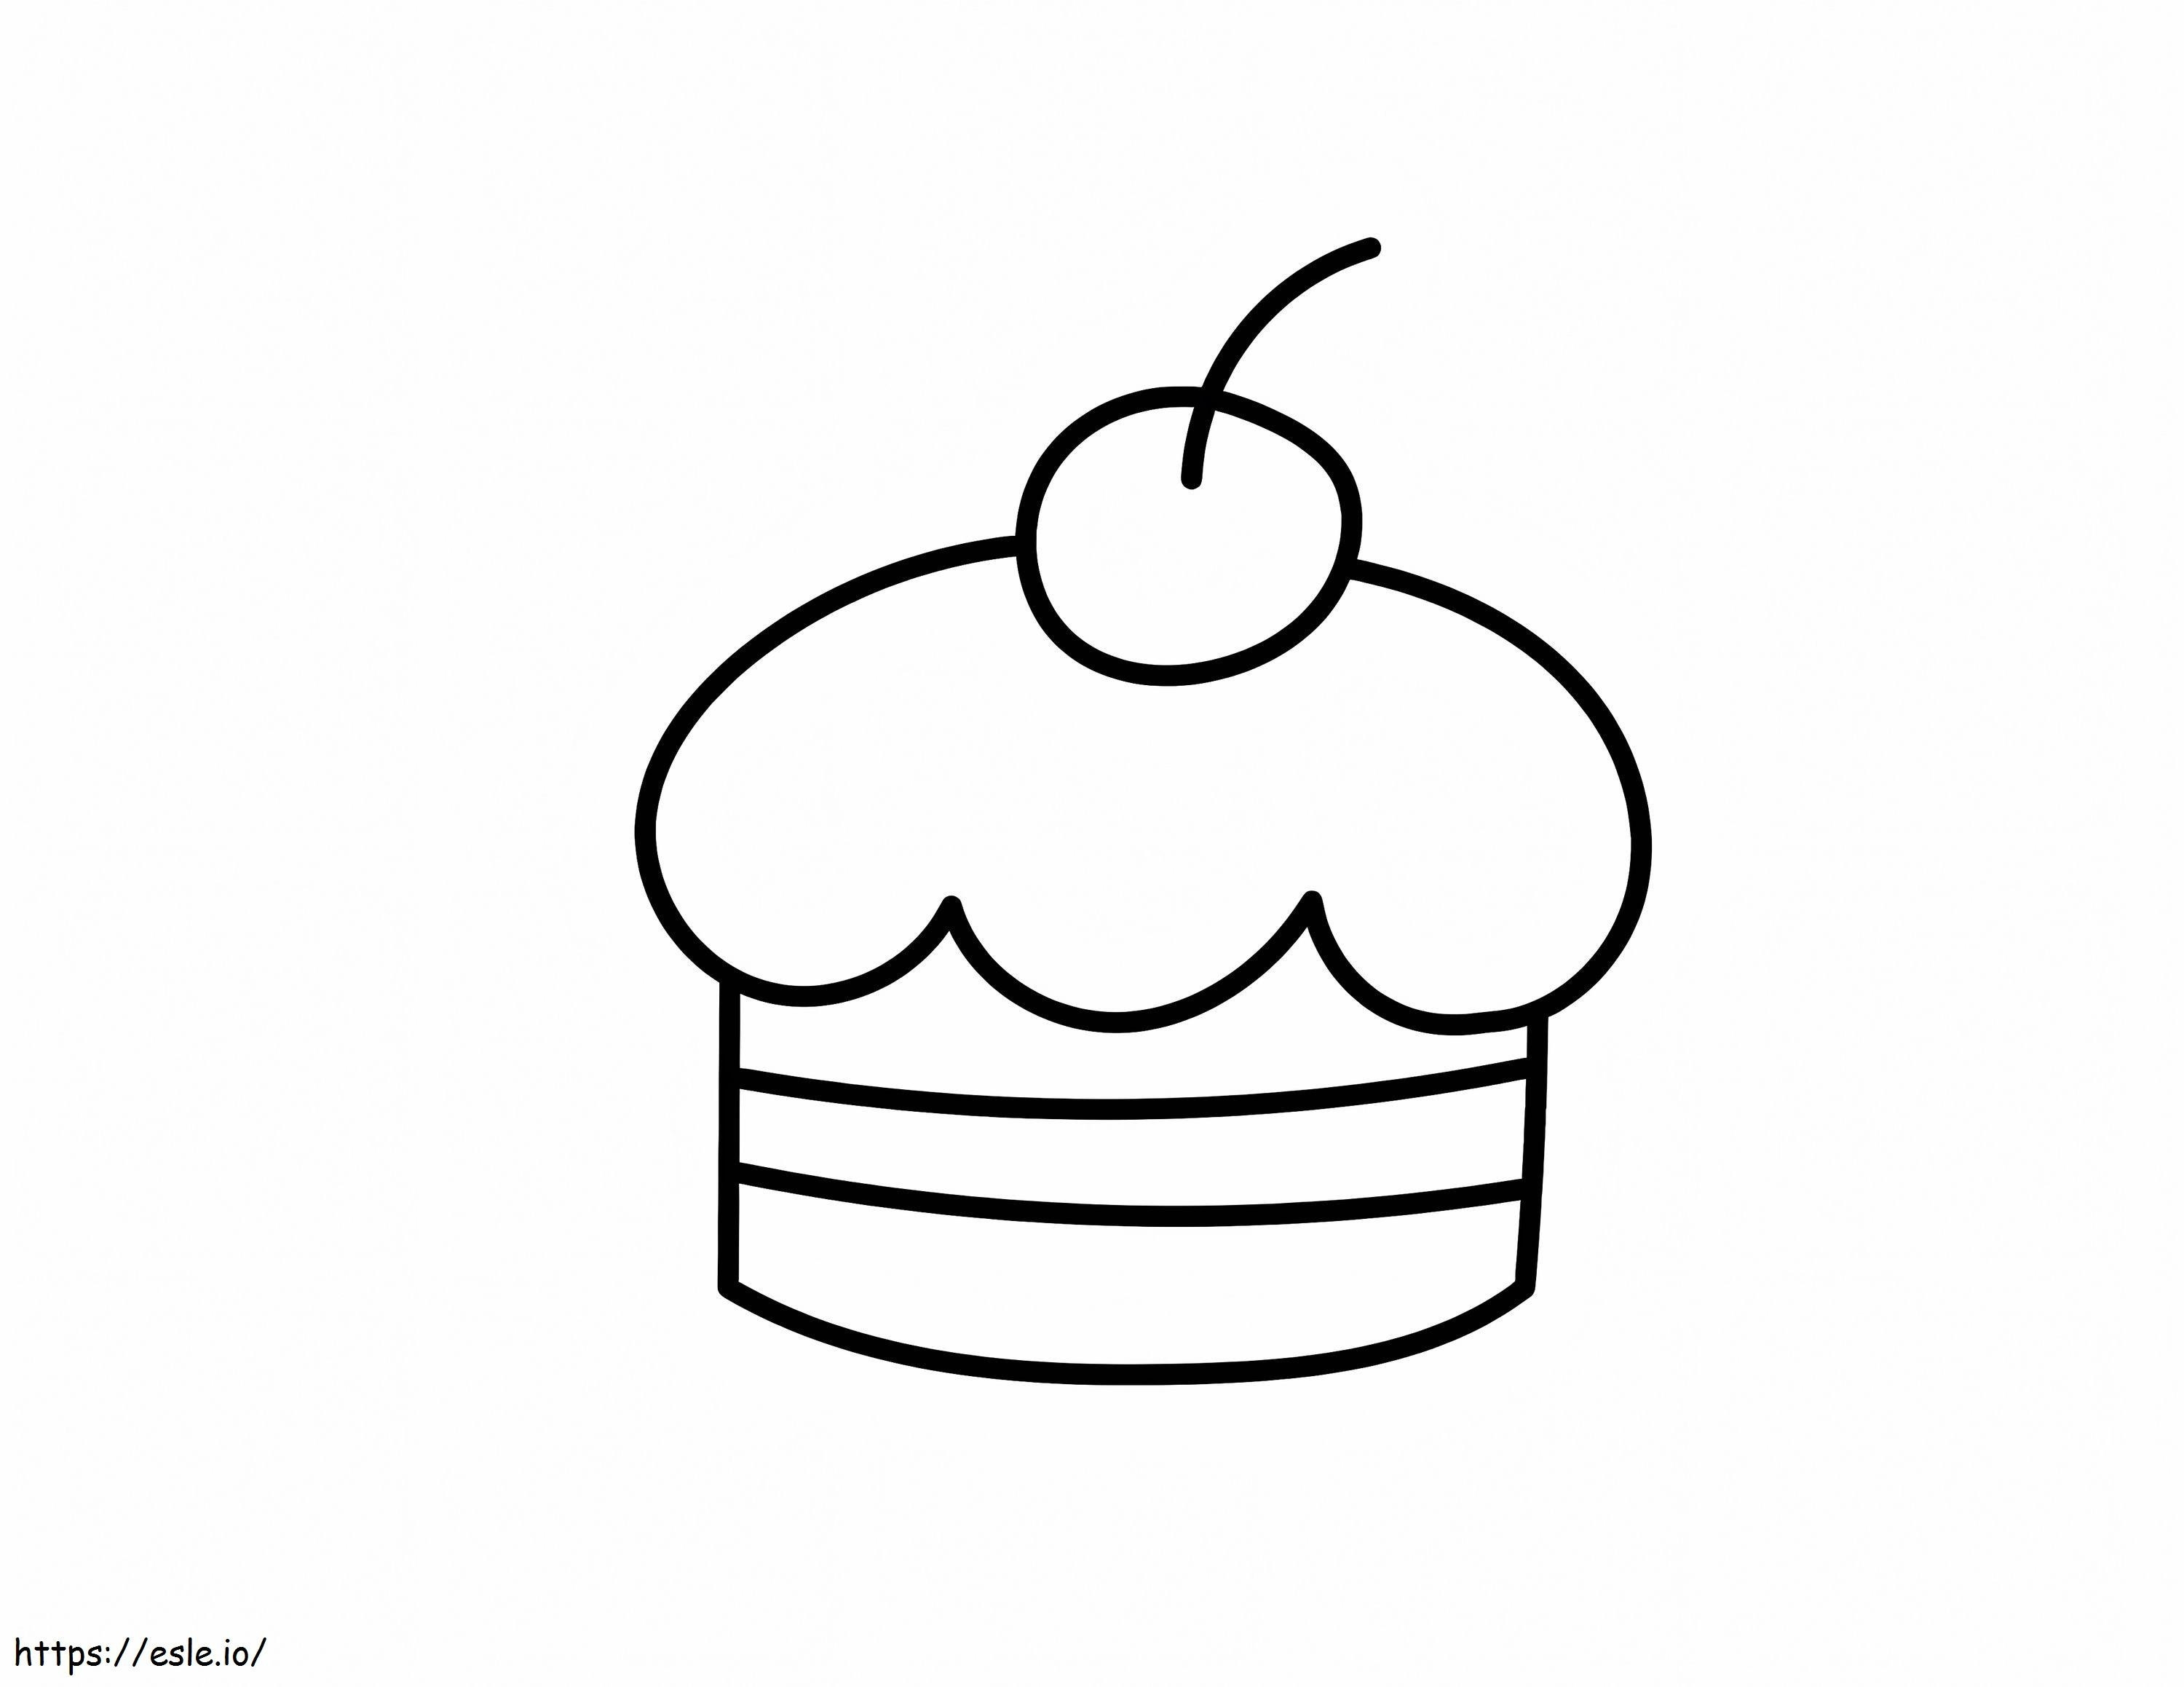 Einfacher Kuchen ausmalbilder